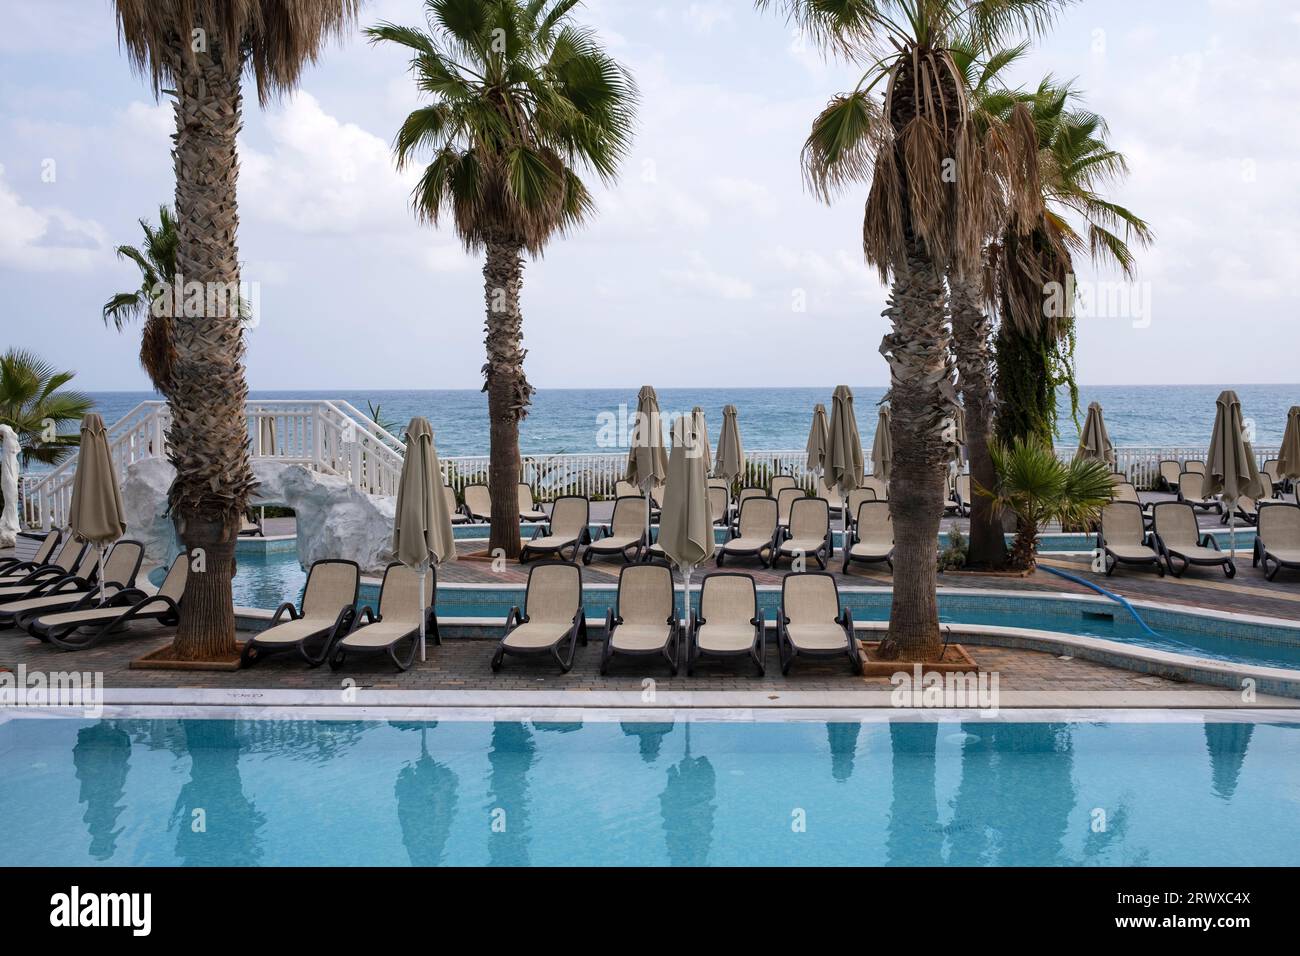 Fuori stagione, area piscina privata nel villaggio di Stalis, Stalida, Creta, Grecia Foto Stock